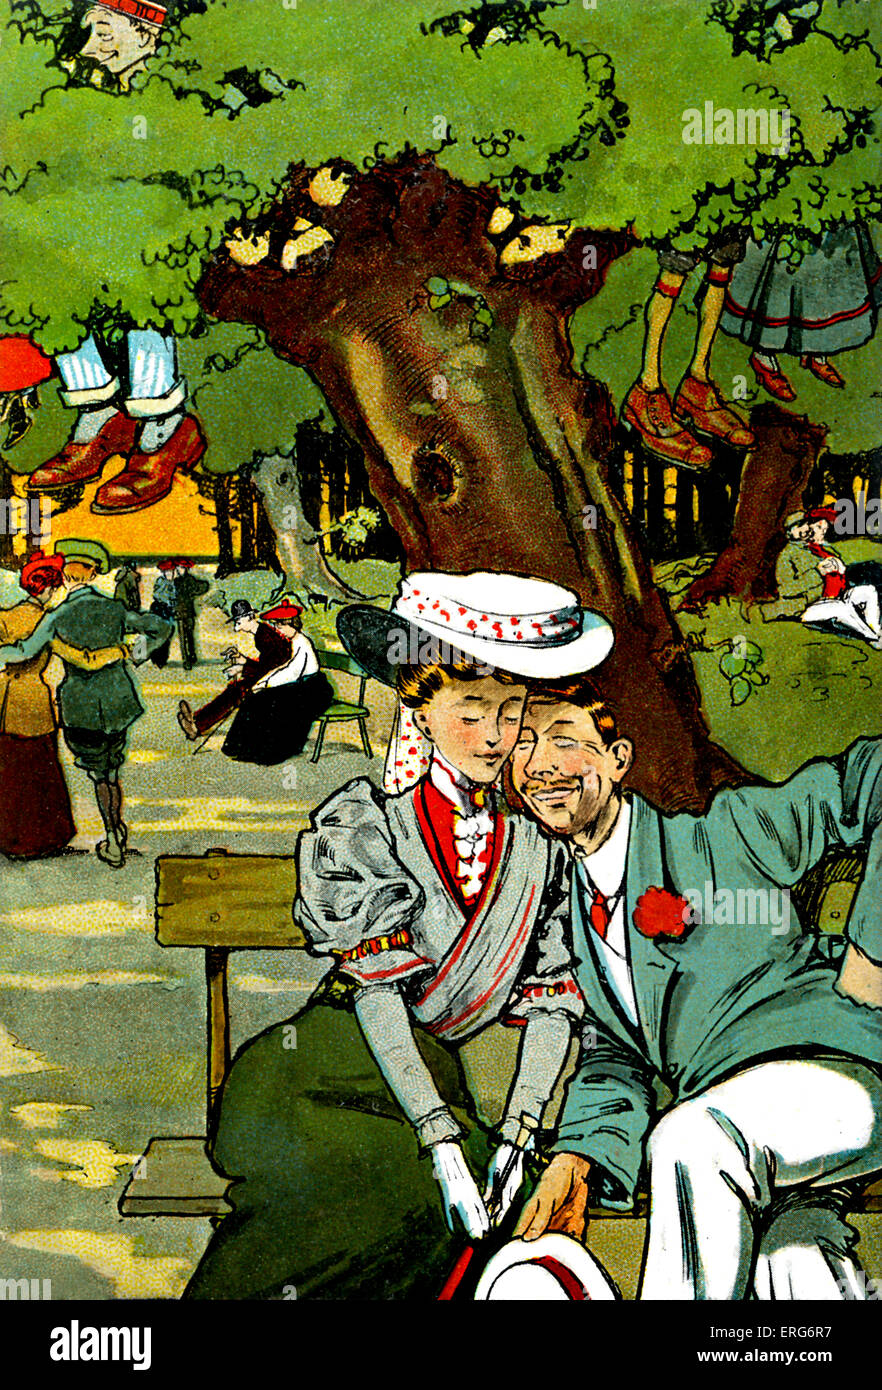 Der Liebhaber gehen bei Newbridge. 1907. humorvoll Postkarte.  Zeichnung von Tony Sarg, (amerikanischer Illustrator, 1880-1942). Stockfoto